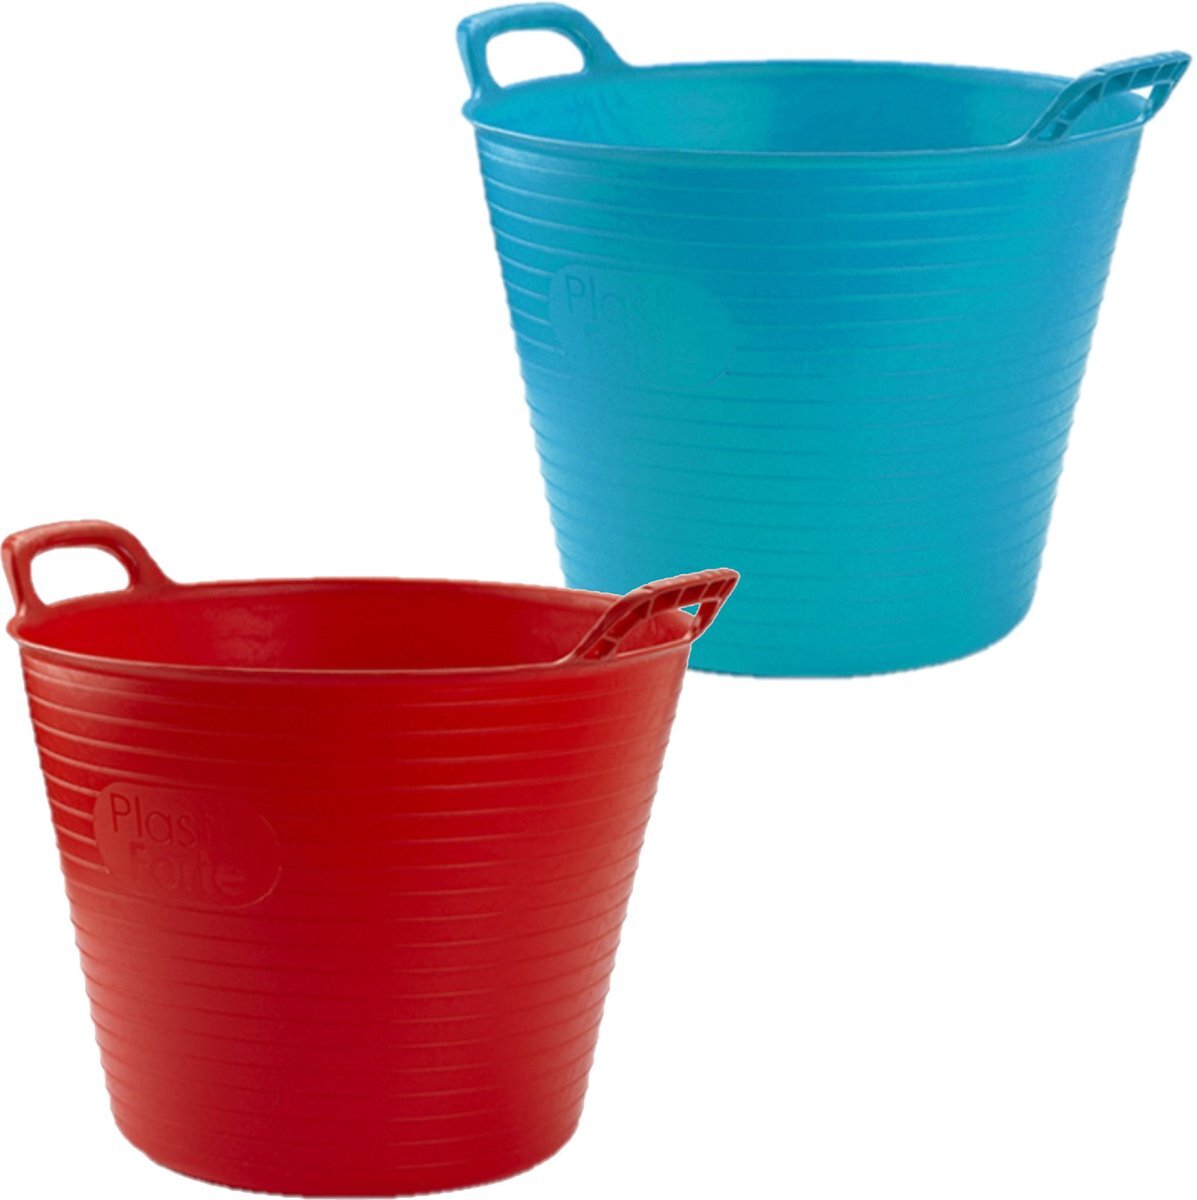 Forte Plastics Voordeelset van 2x stuks kunststof flexibele emmers/wasmanden/kuipen 25 liter in het rood/blauw 42 x 33 cm